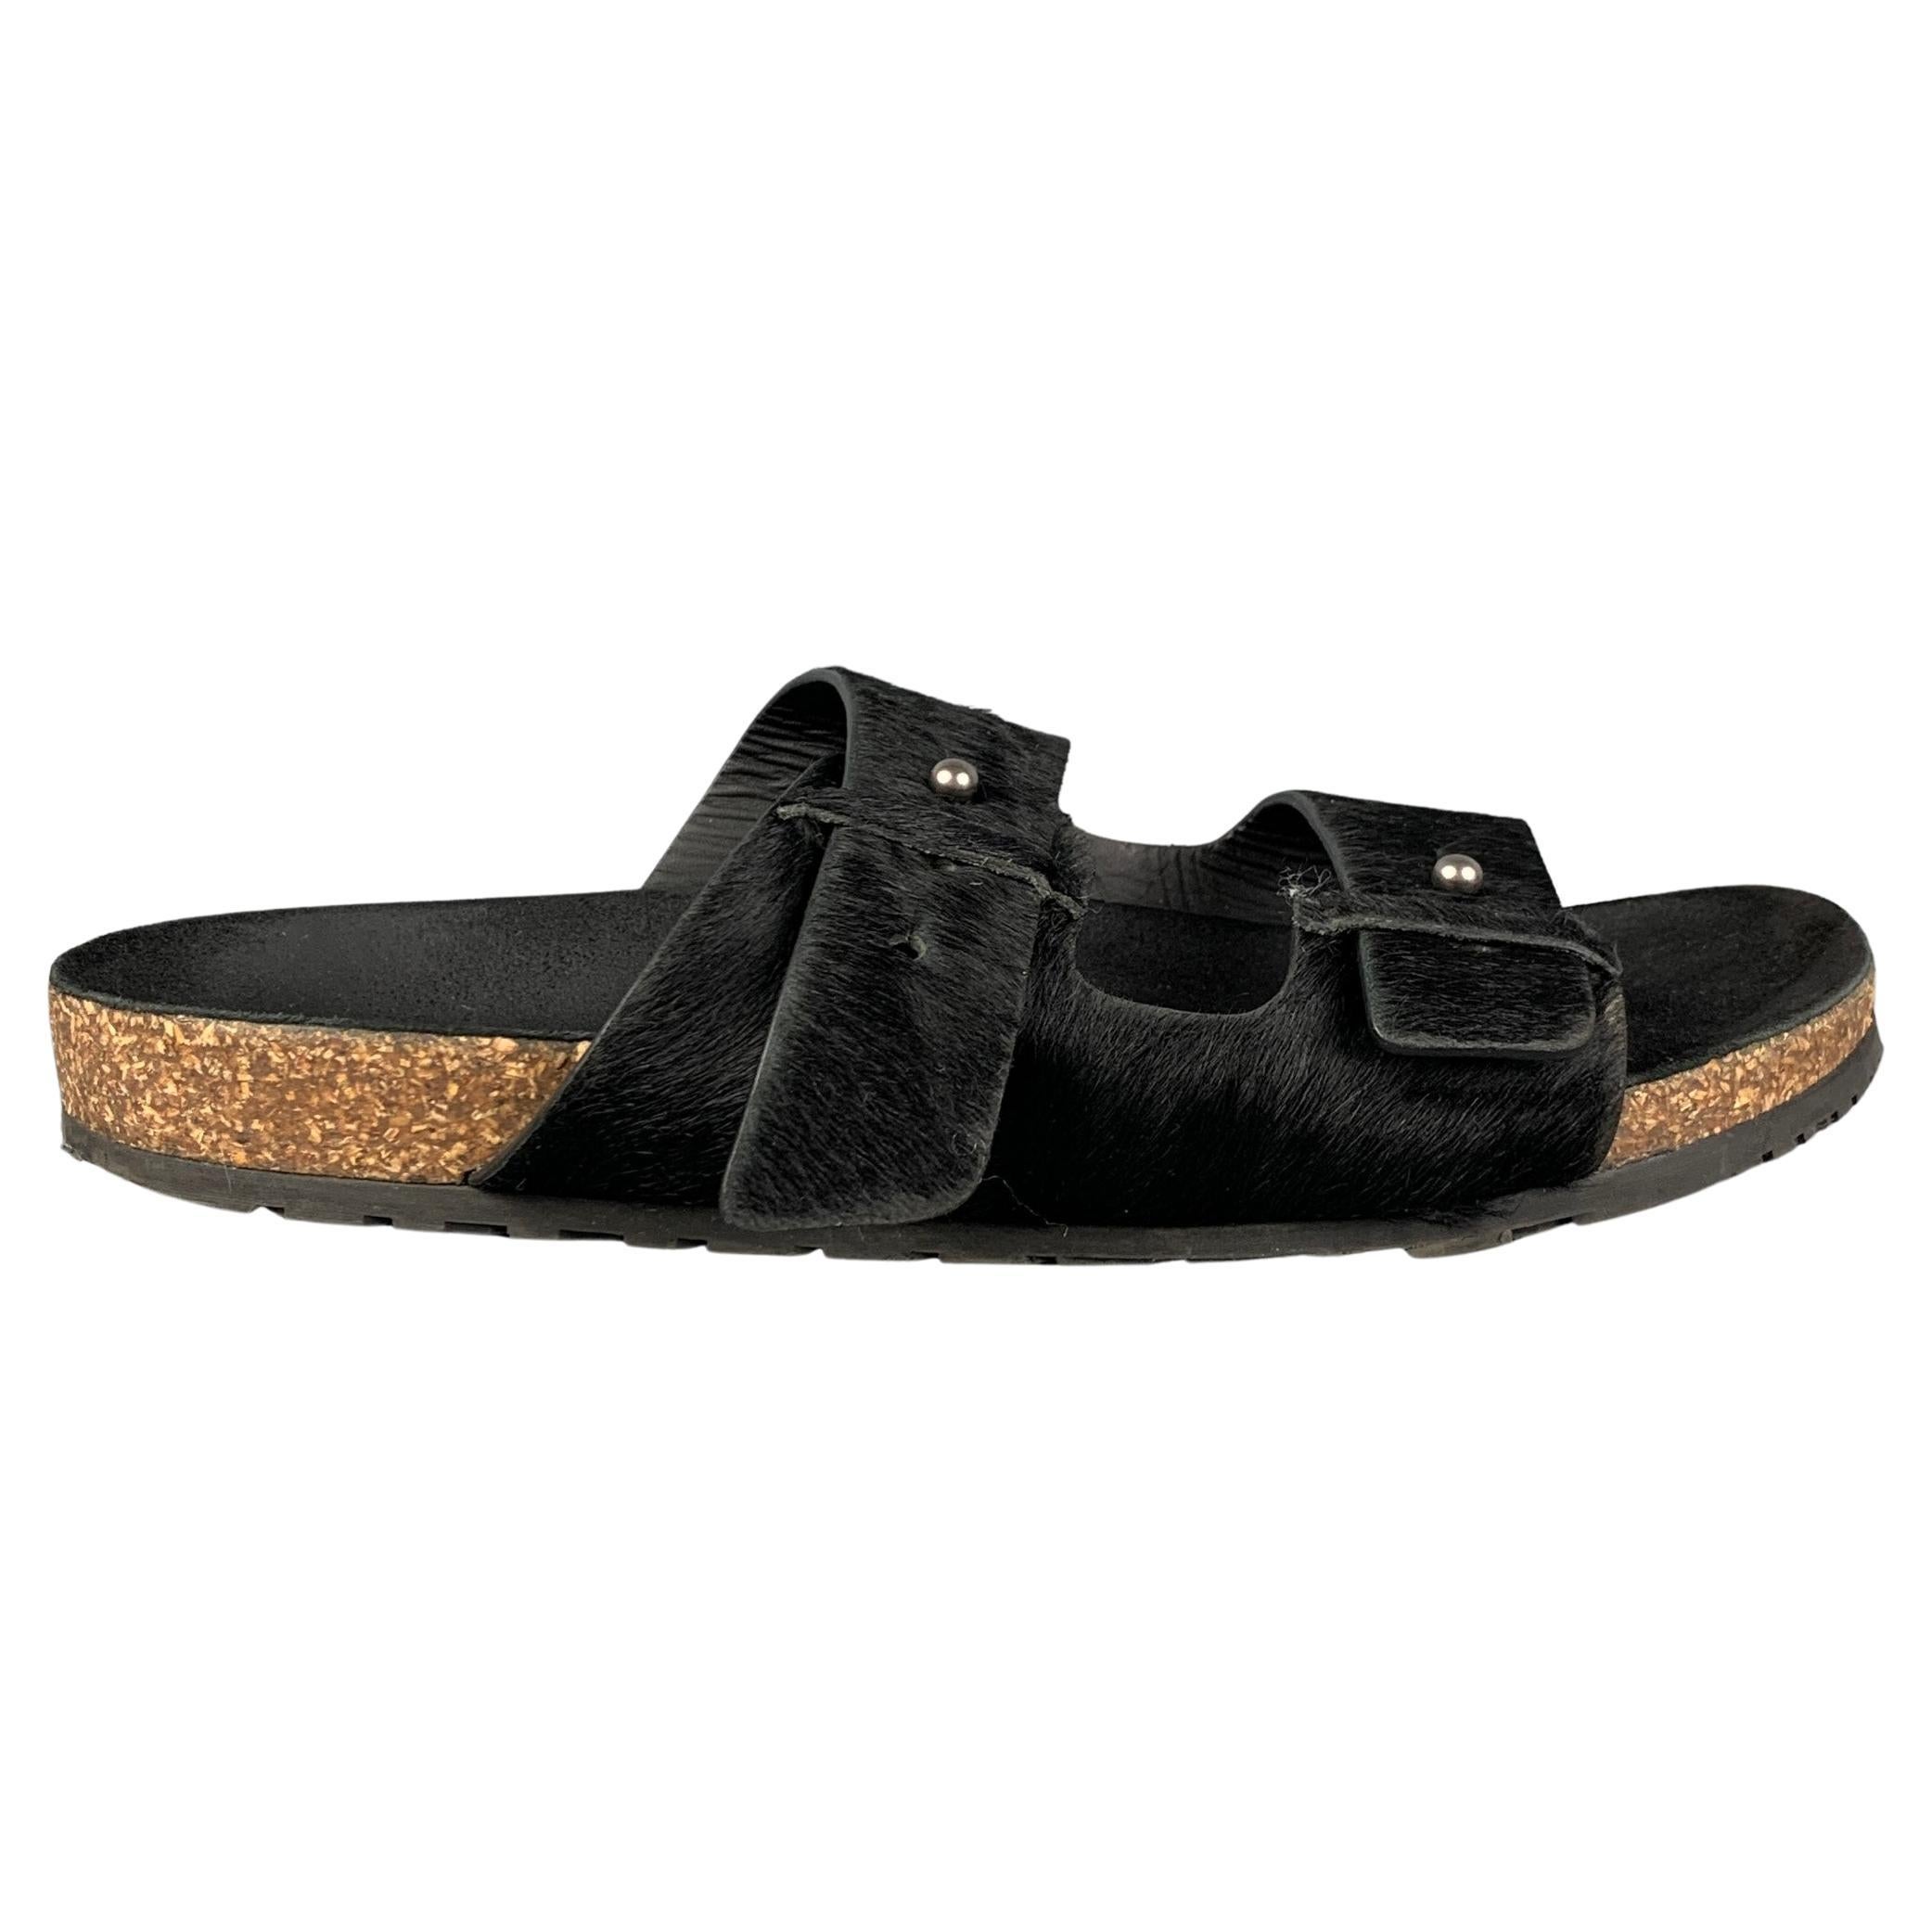 SAINT LAURENT Size 9 Black Textured Leather Jimmy Flat Sandals